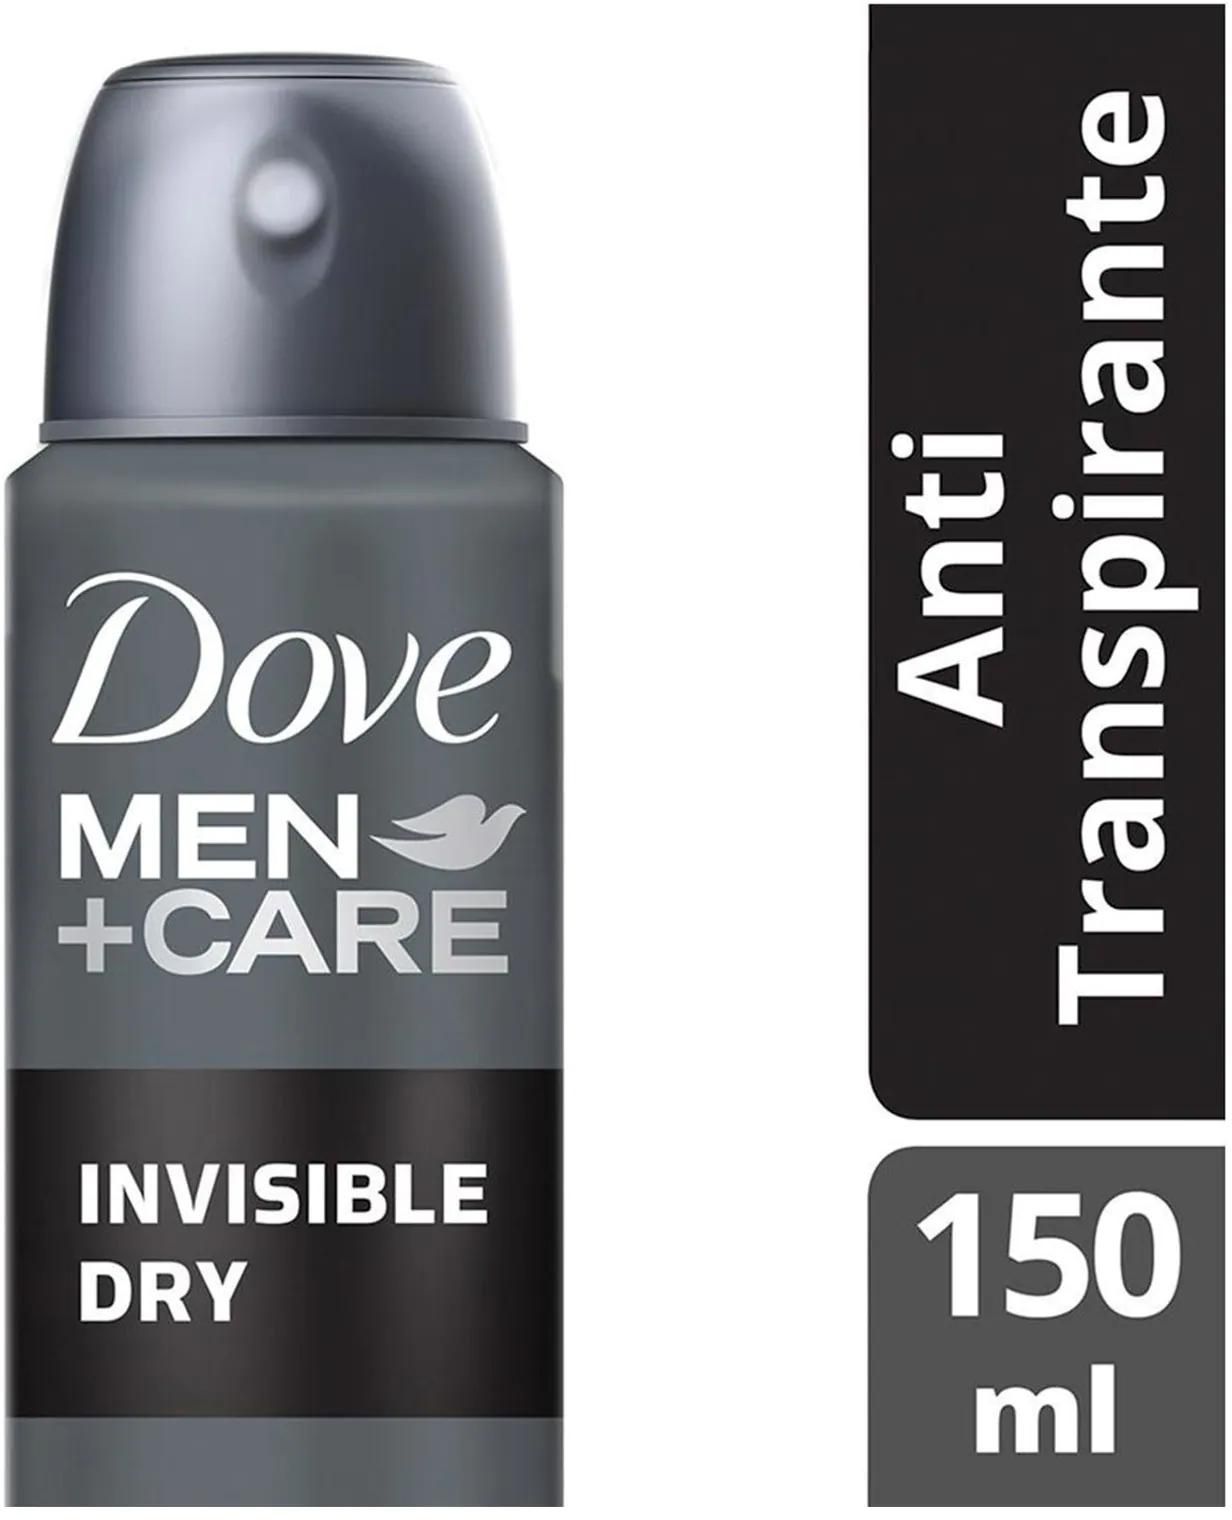 Dove men care invisible dry 150 ml